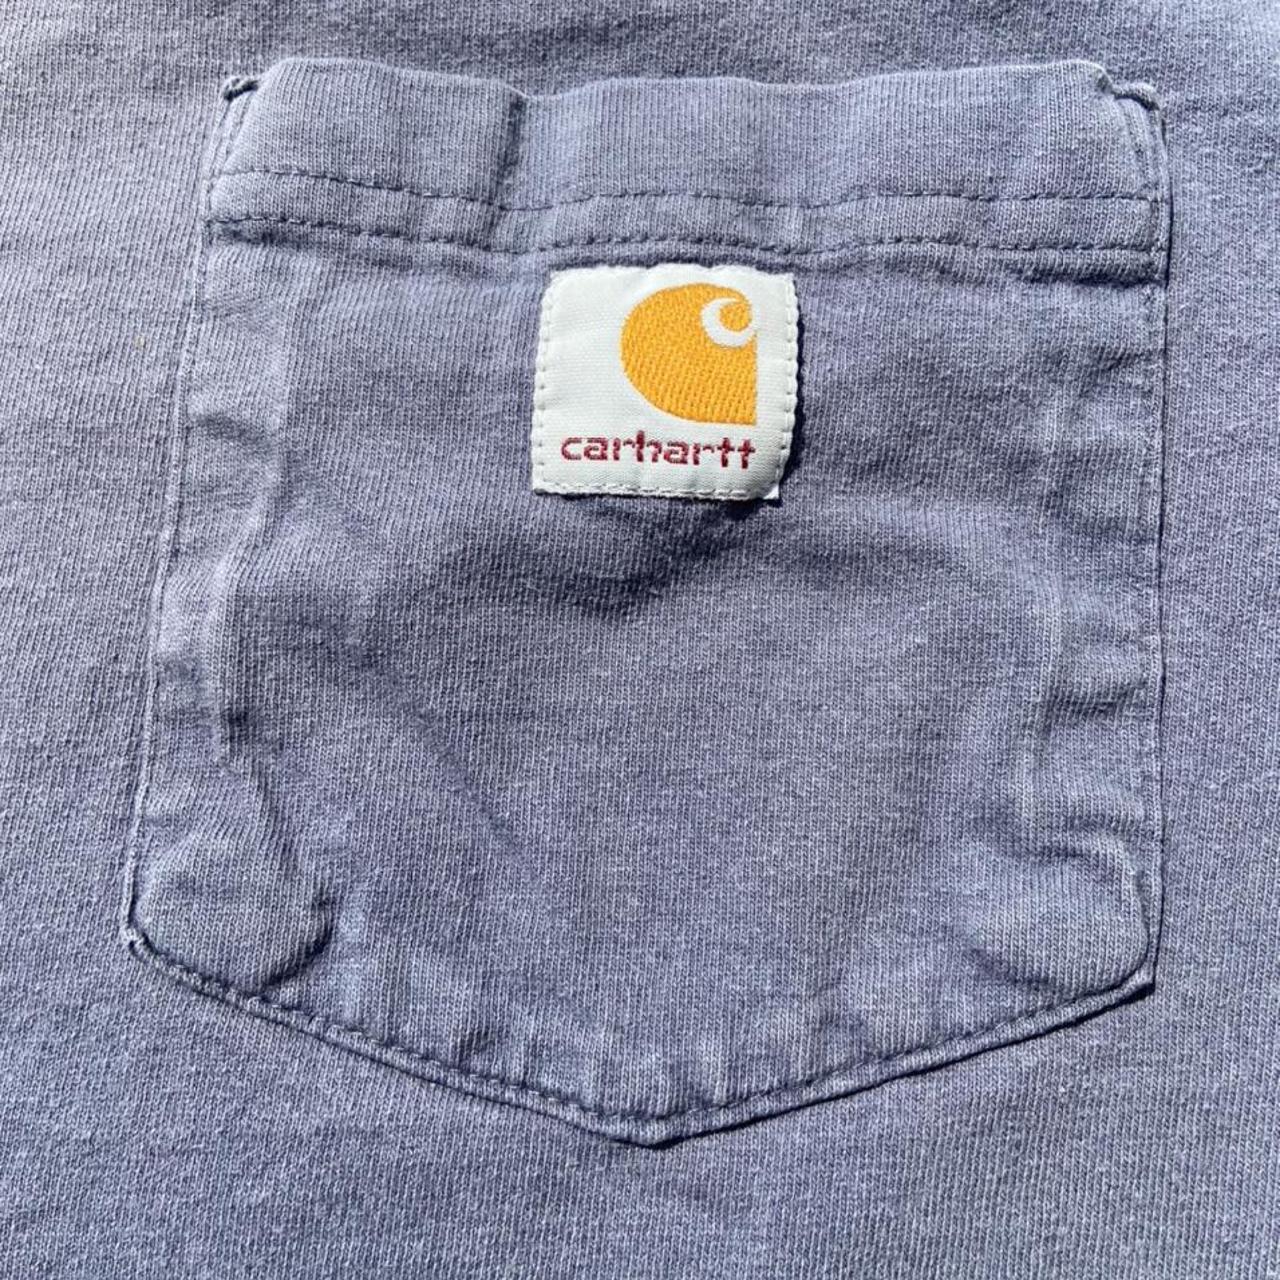 Carhartt Men's Grey Shirt (4)